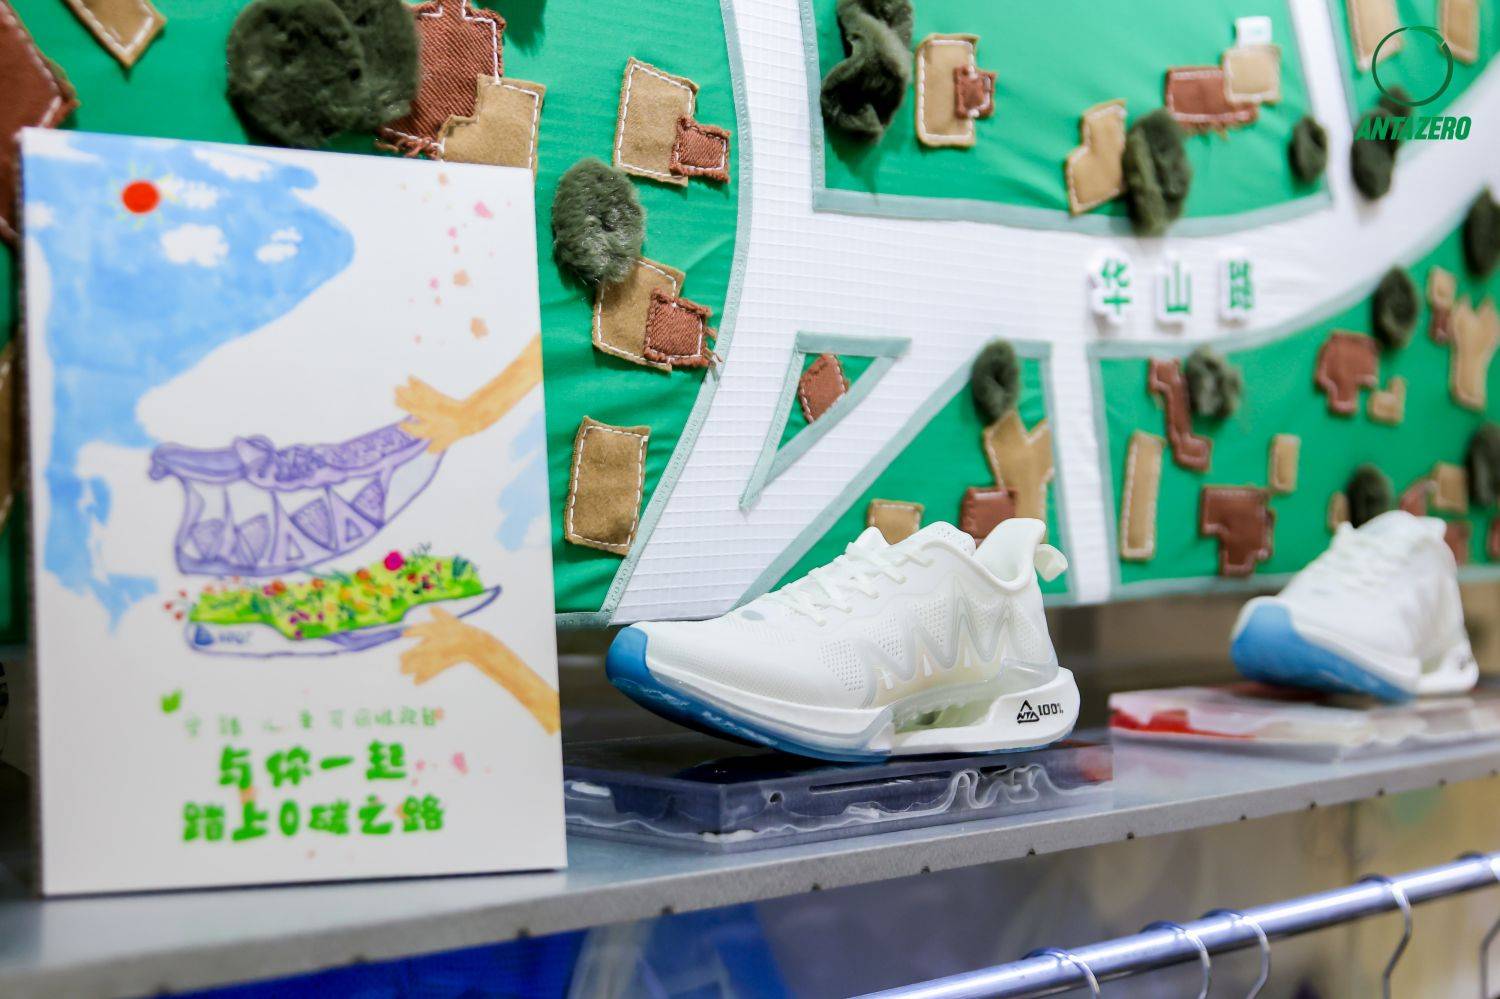 这是安踏儿童第一双可回收跑鞋,采用tpu材料制成,跑鞋报废后经过回收